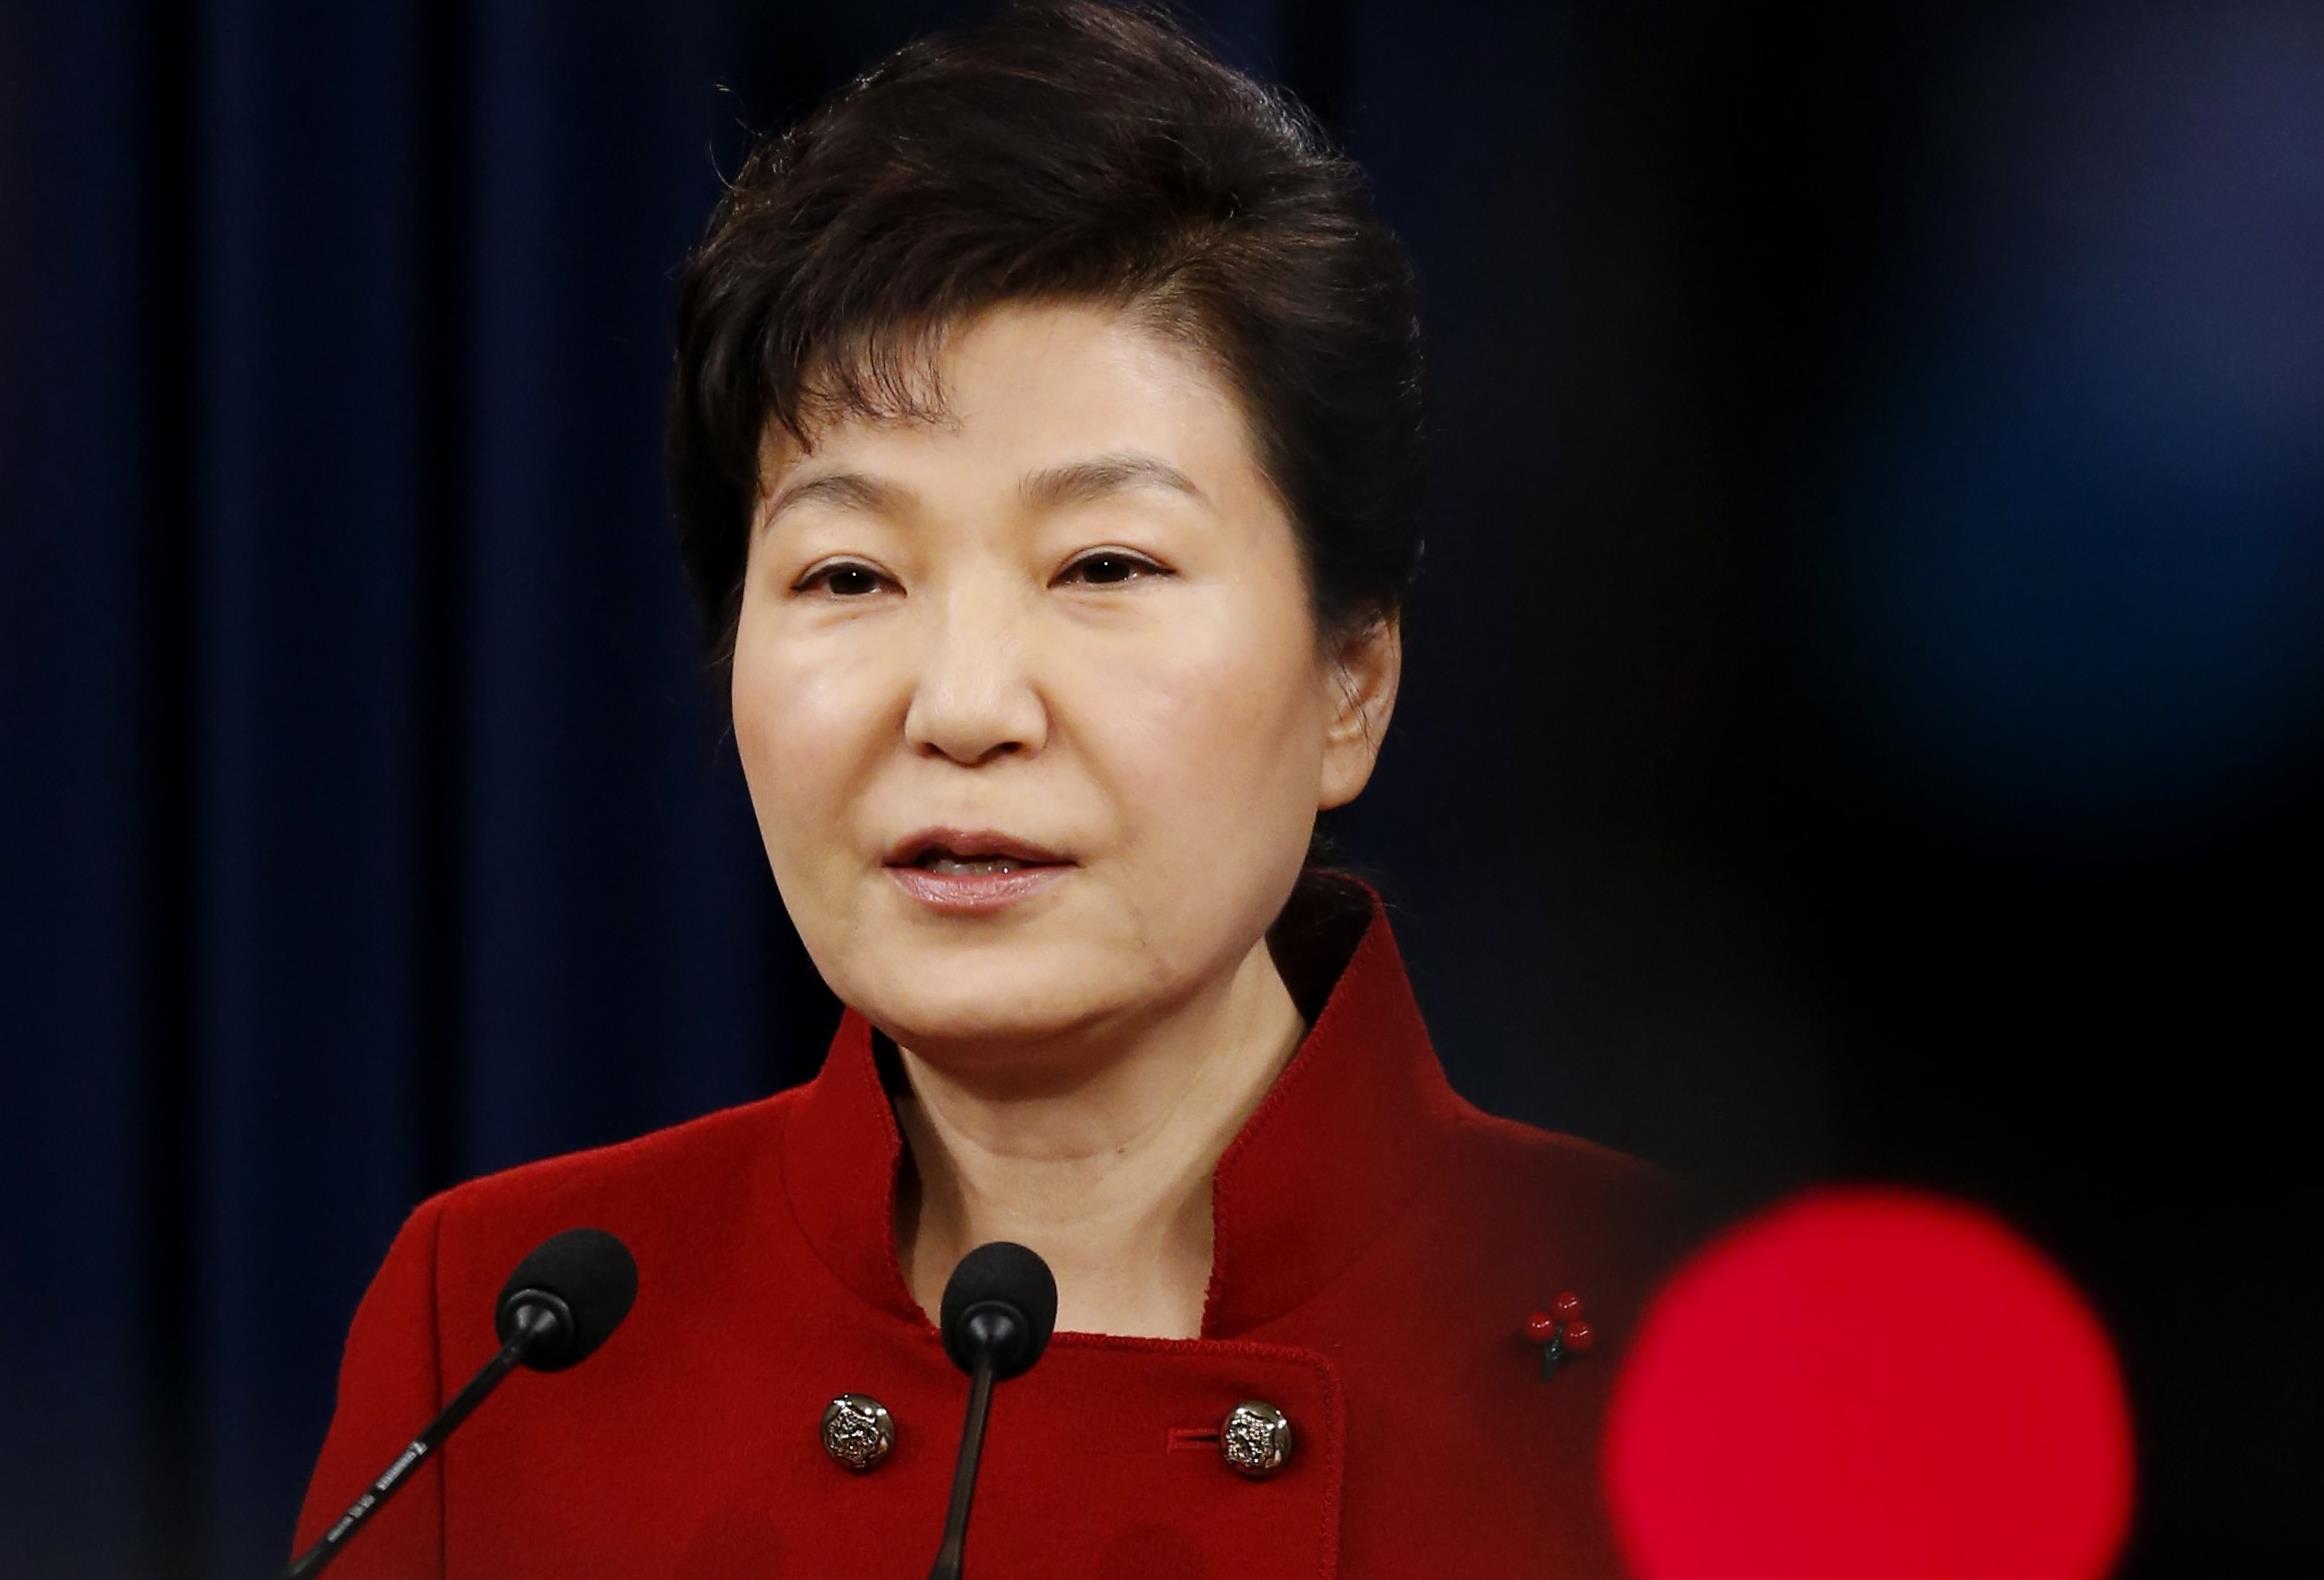 Η παράξενη μοίρα της προέδρου της Ν.Κορέας που καθαιρέθηκε